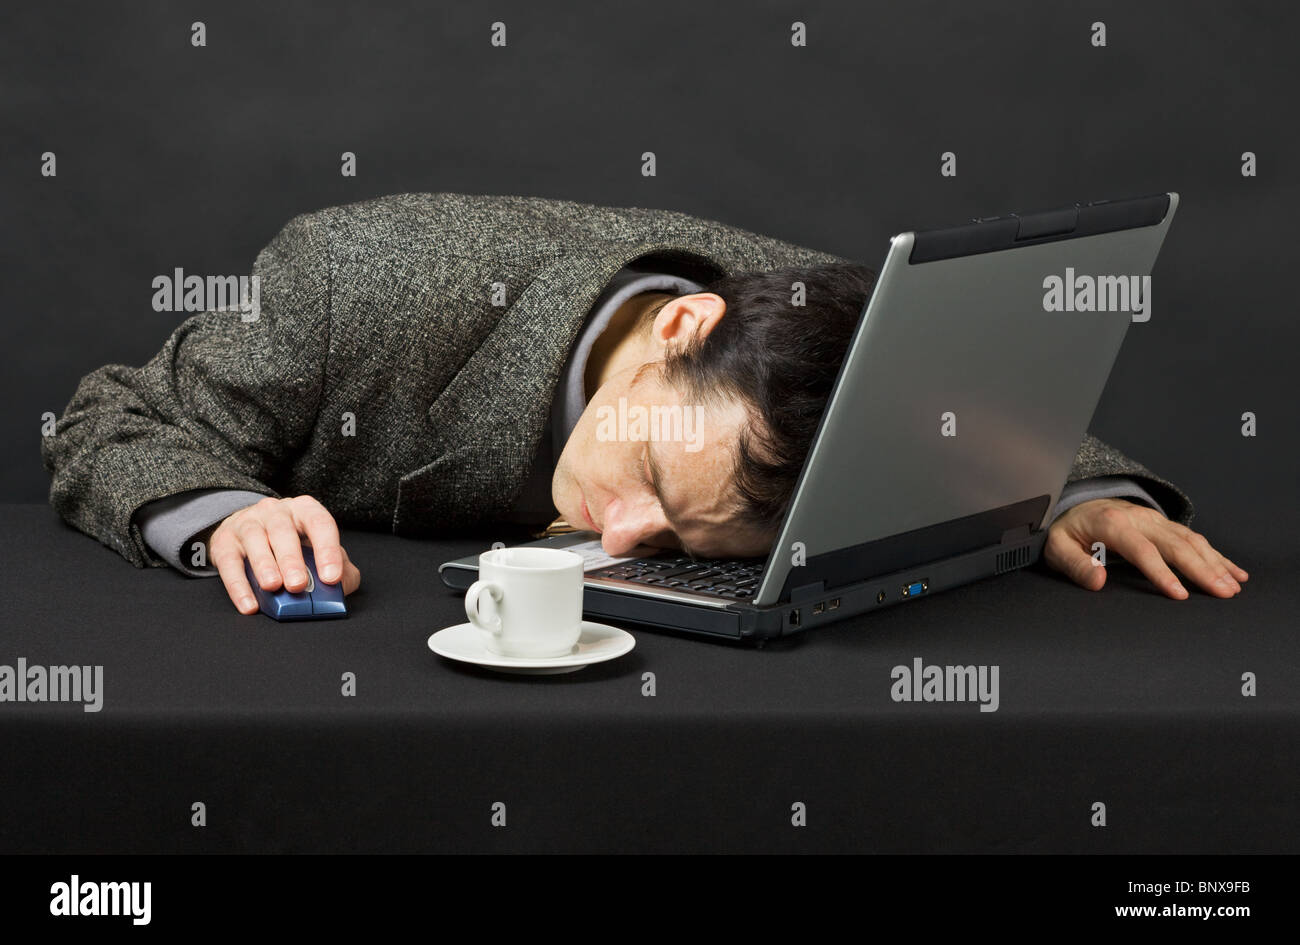 Устал от телефона. Человек перед компьютером. Заснул за компьютером. Спящий человек за компьютером.